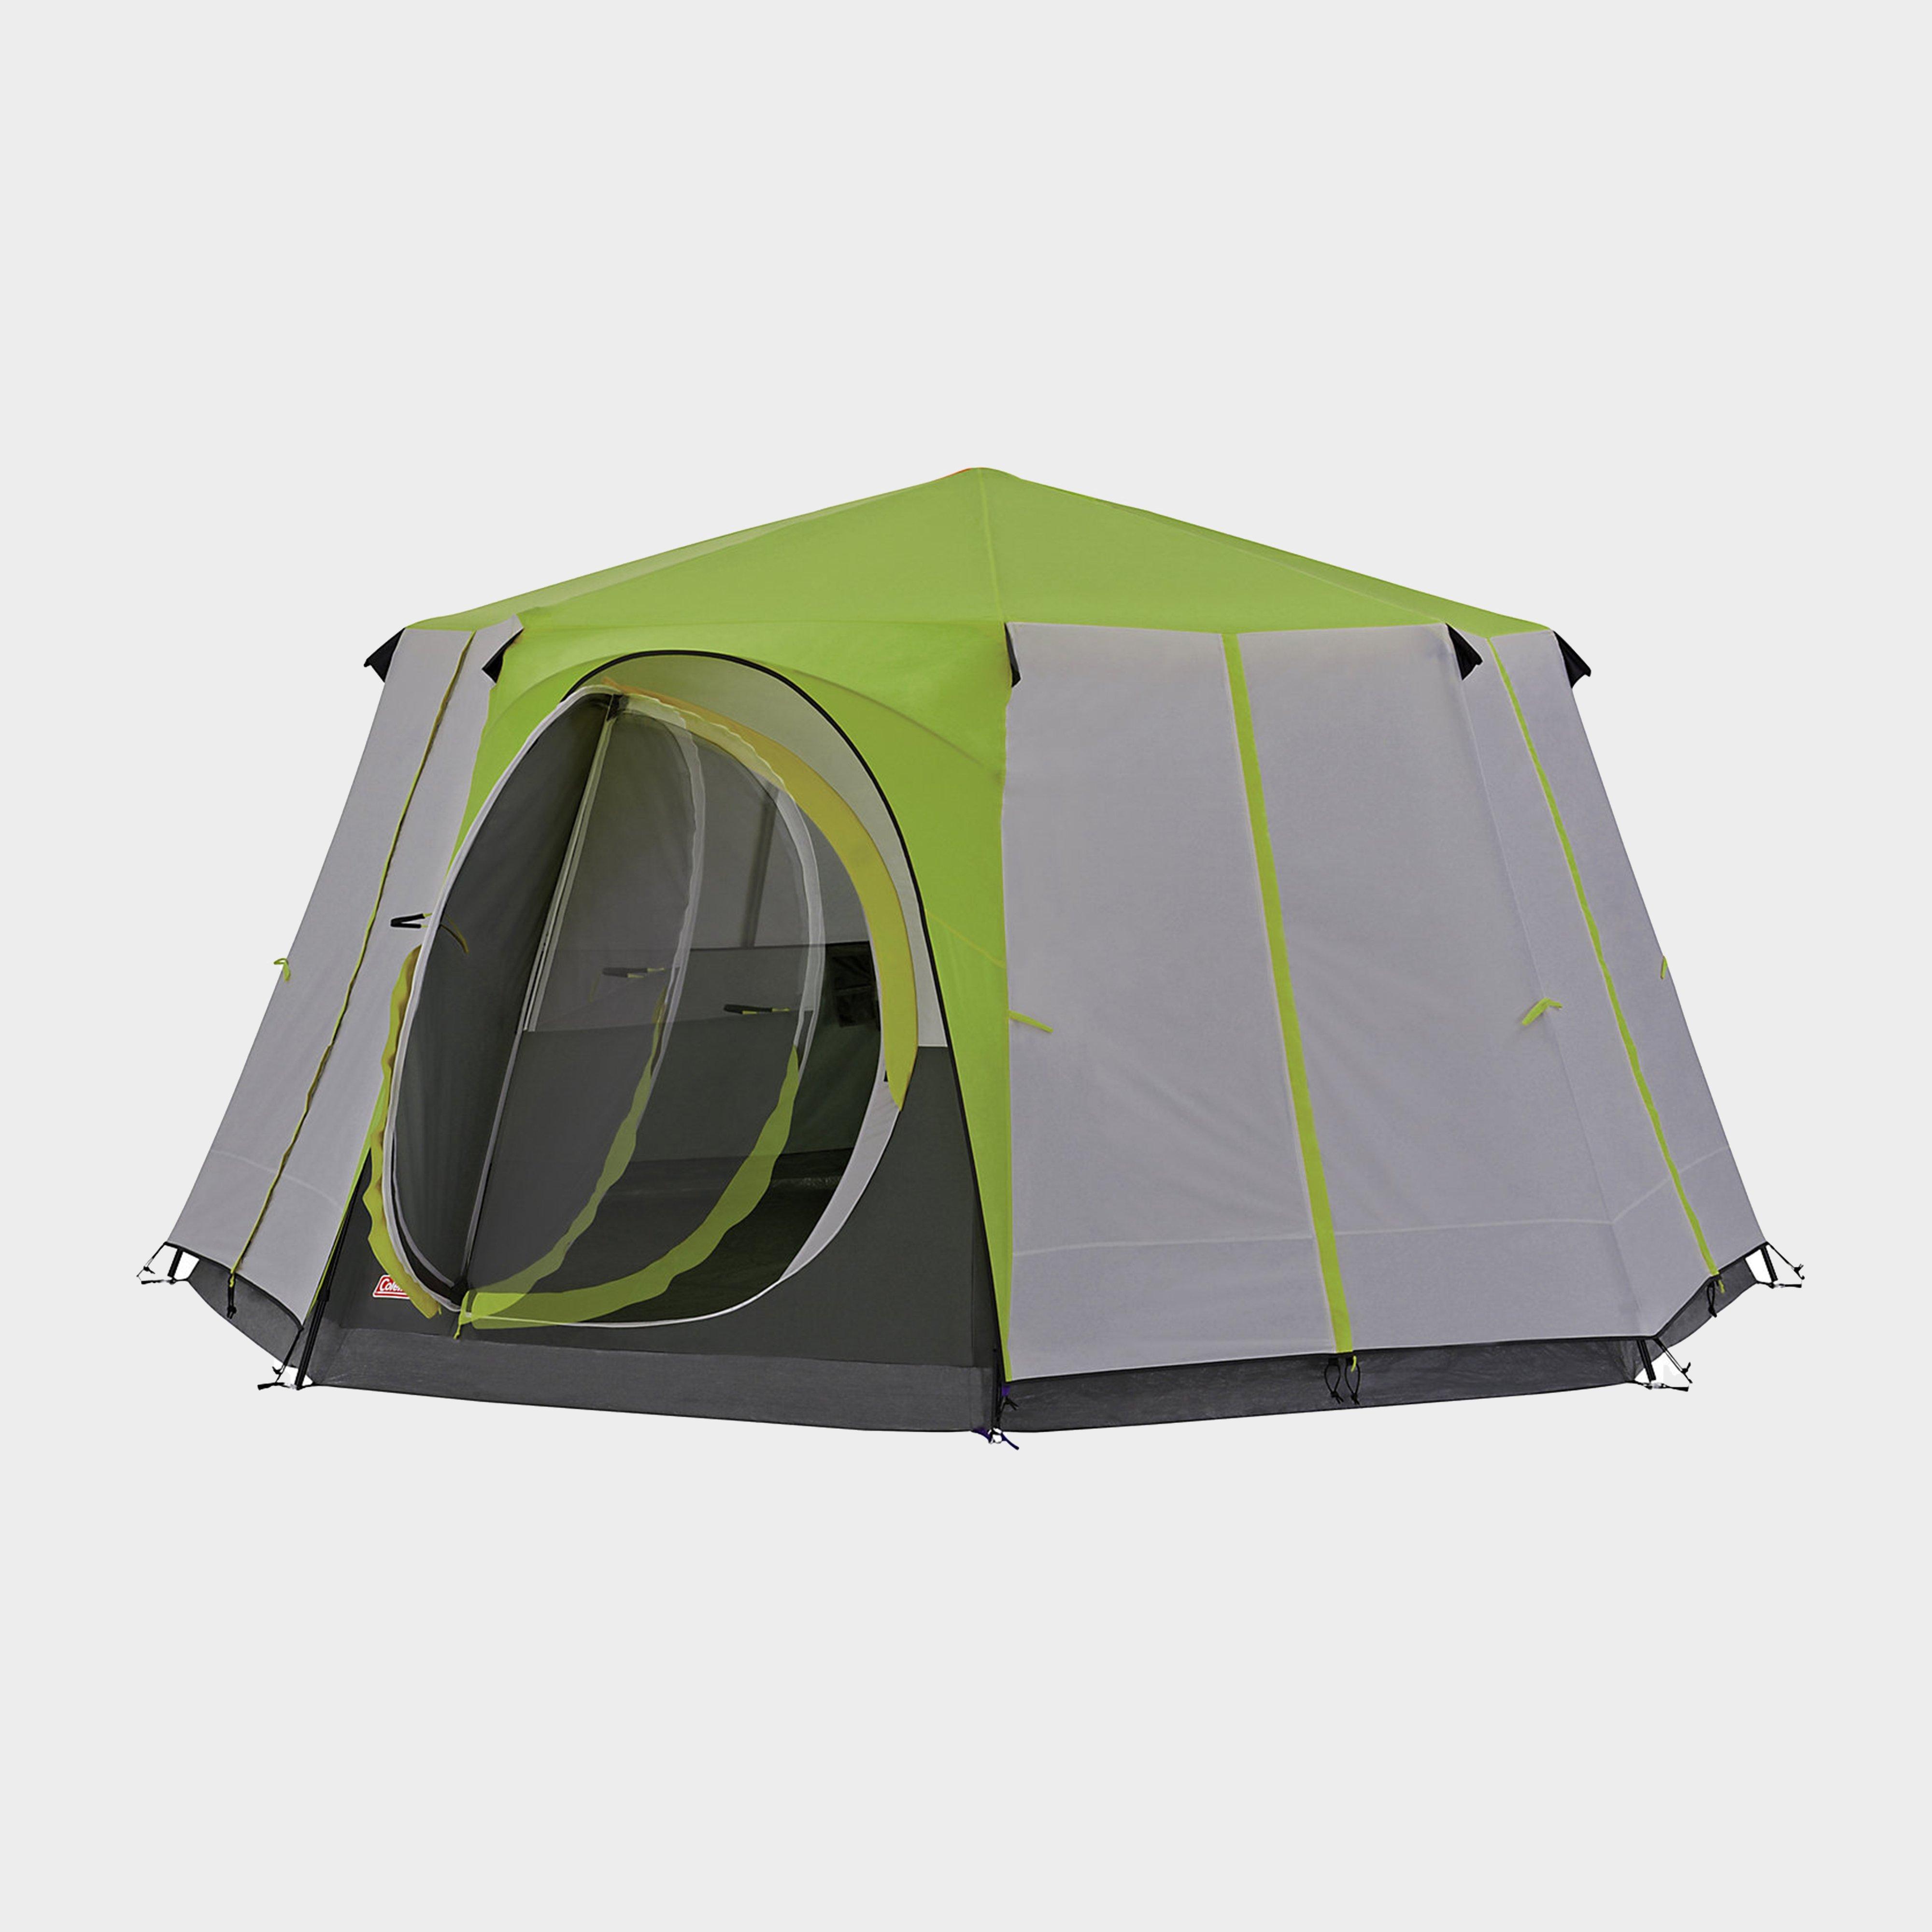 COLEMAN Cortes Octagon 8 Tent, Green